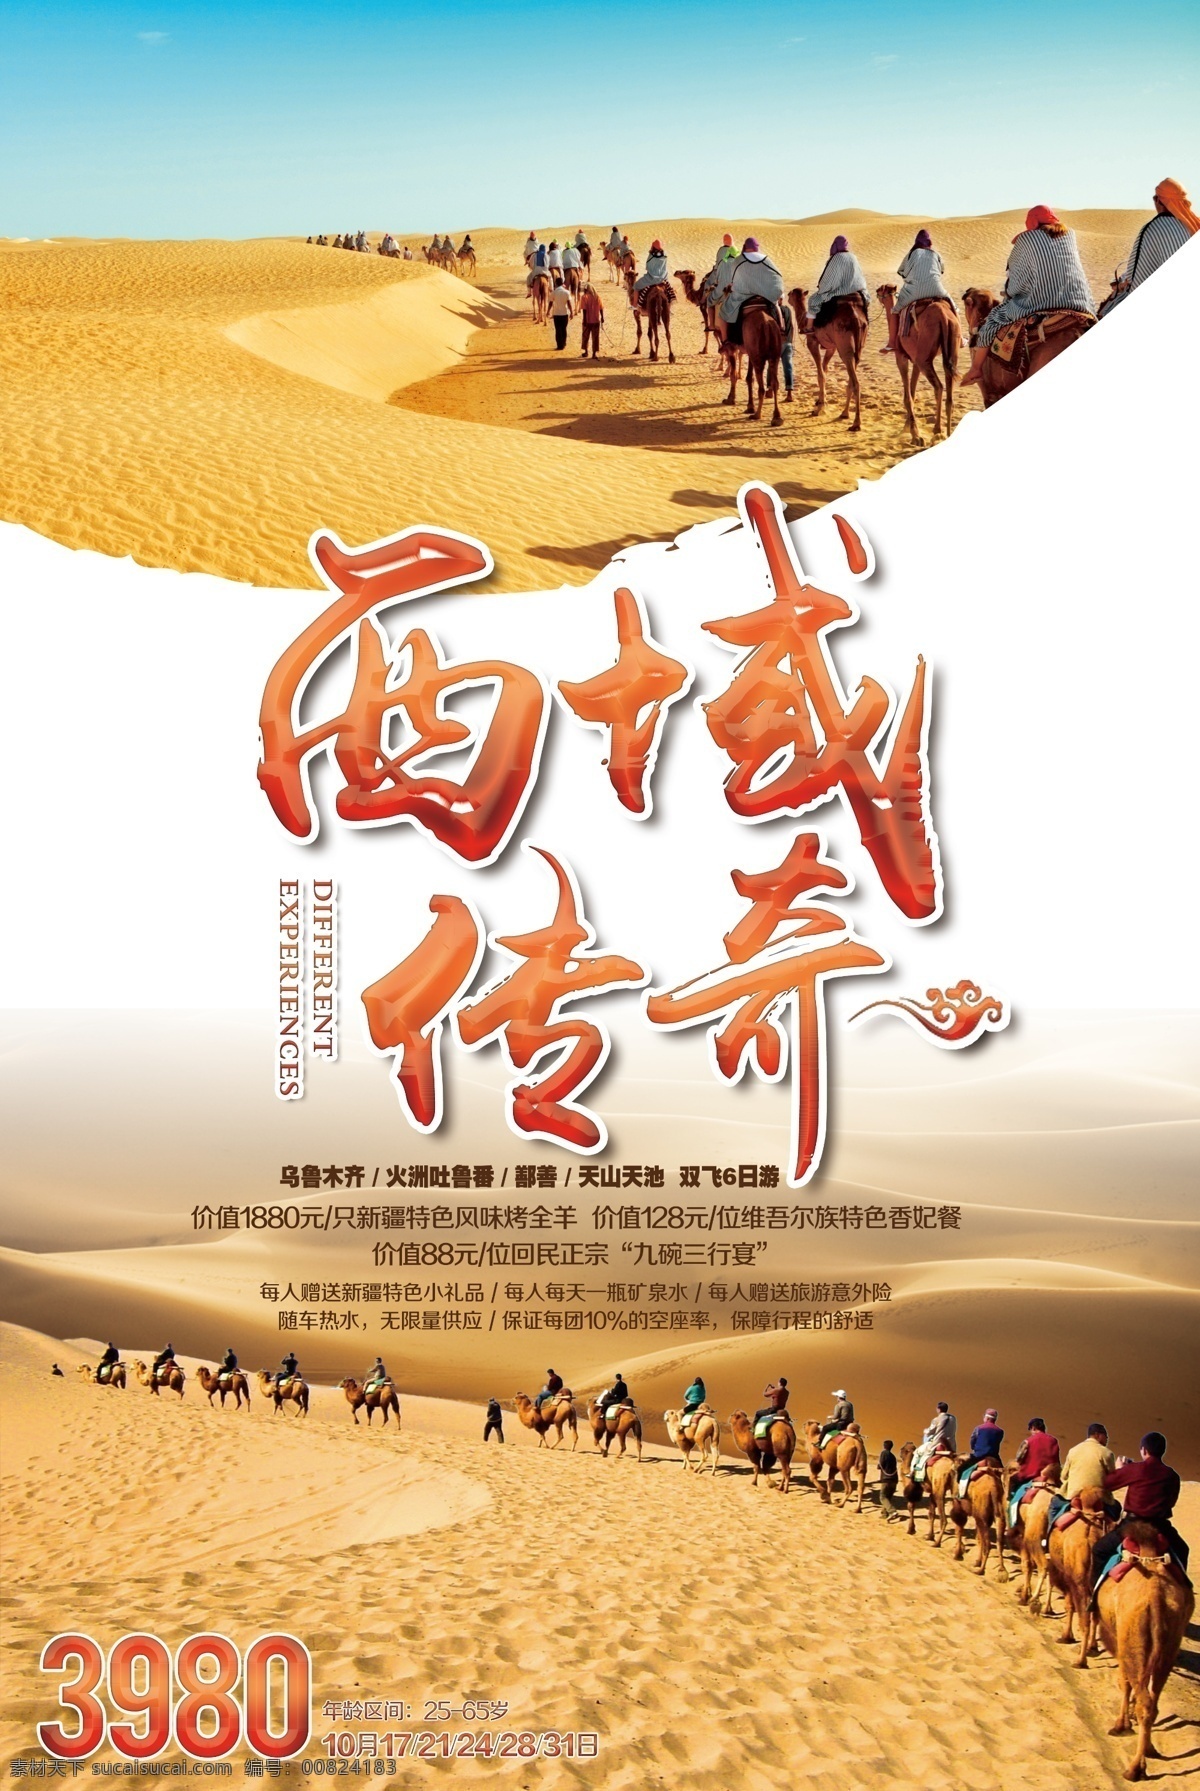 西域传奇 新疆 旅游 沙漠 骆驼 骆驼队